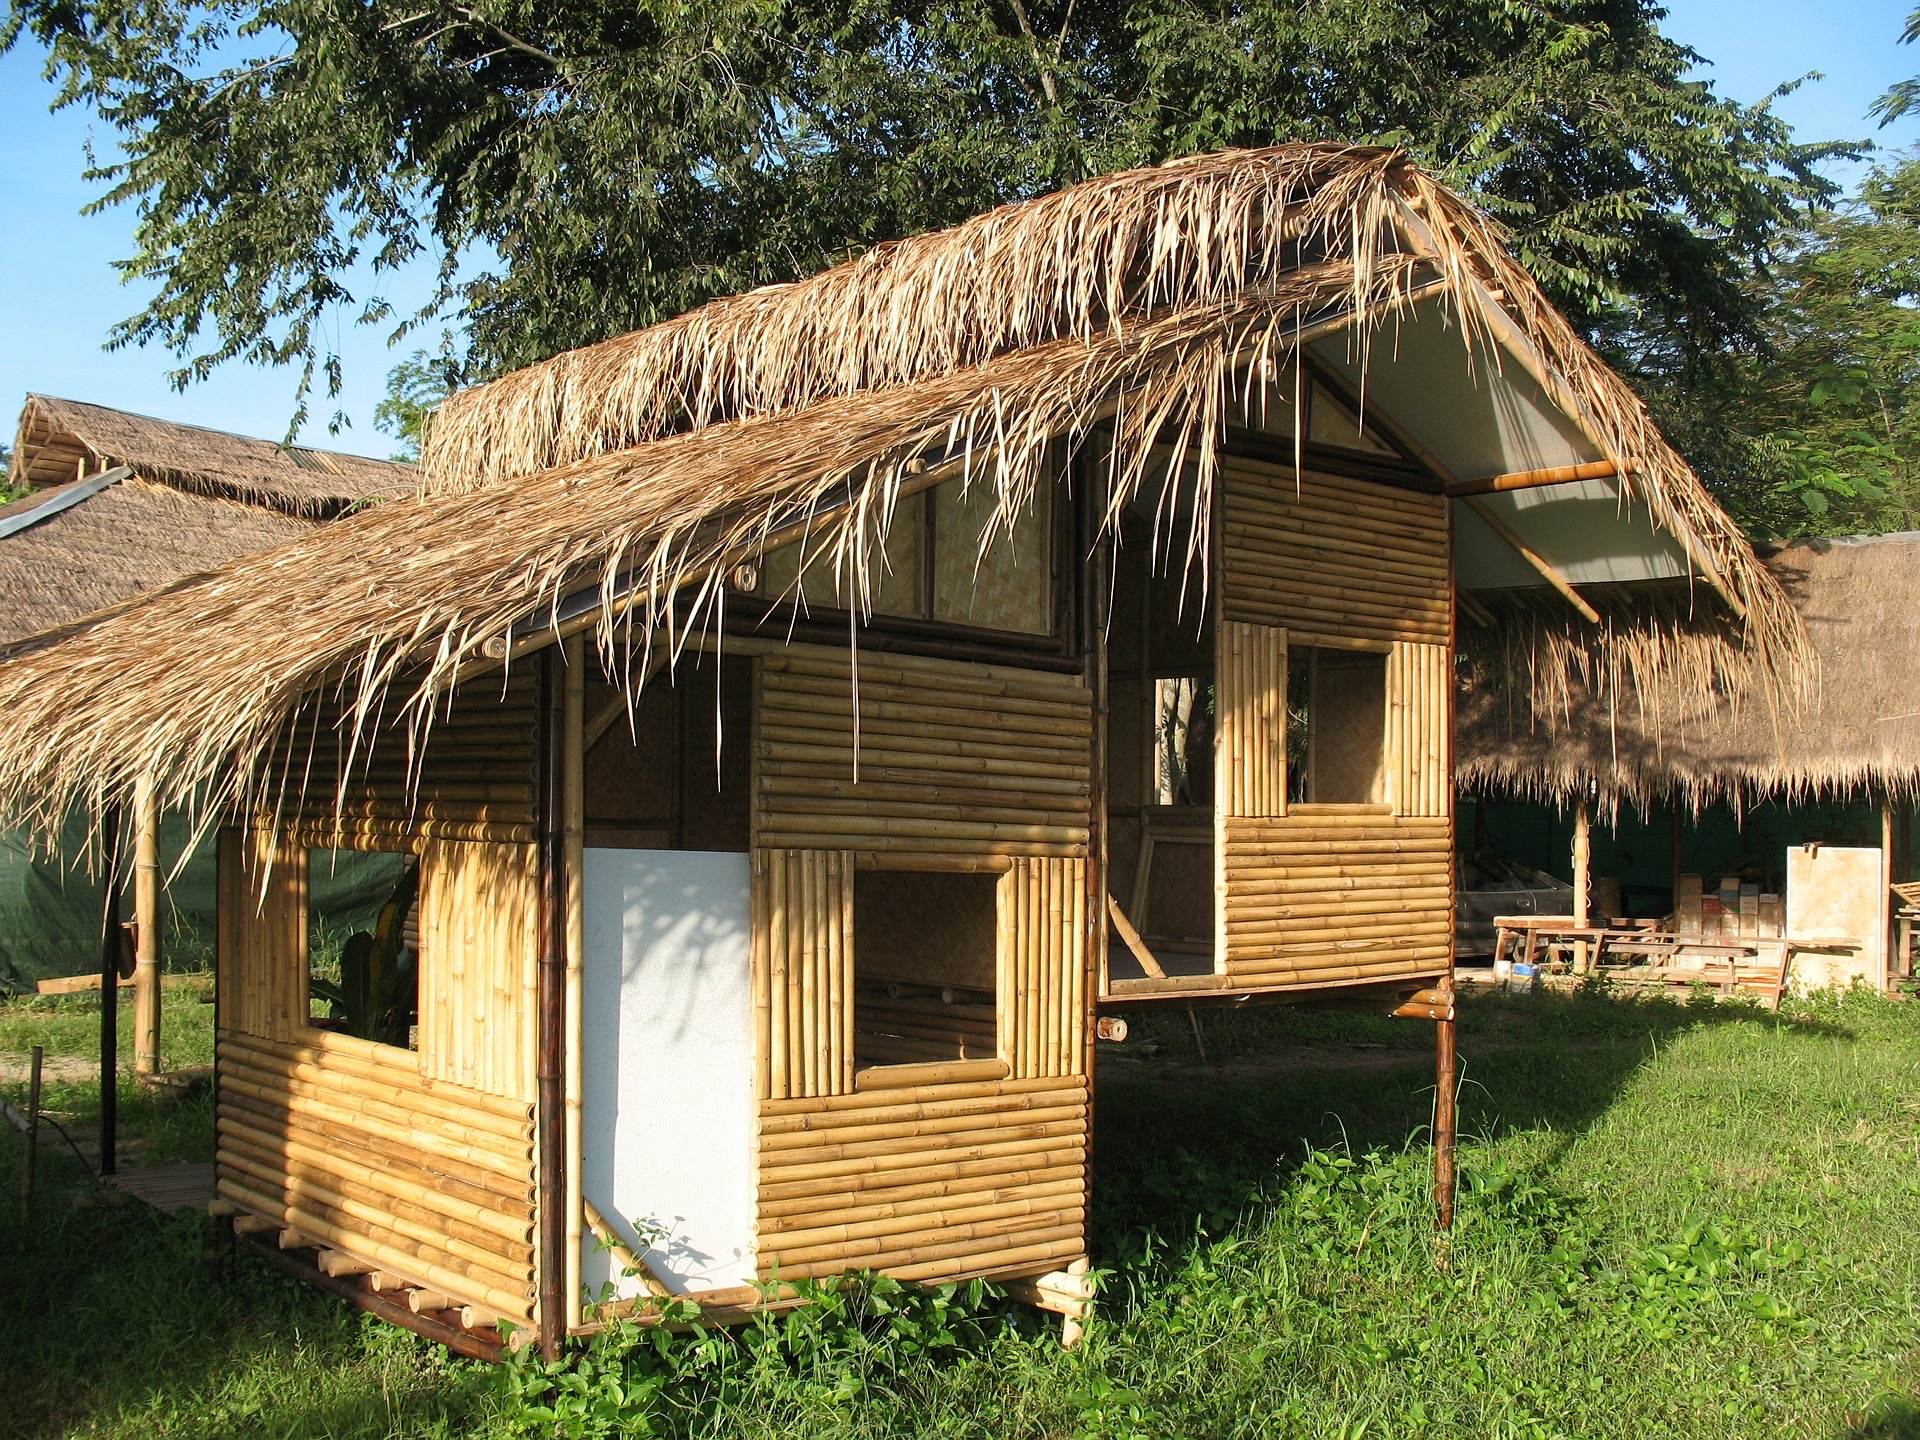  Rumah  Bambu  Kembar Siam Thegorbalsla